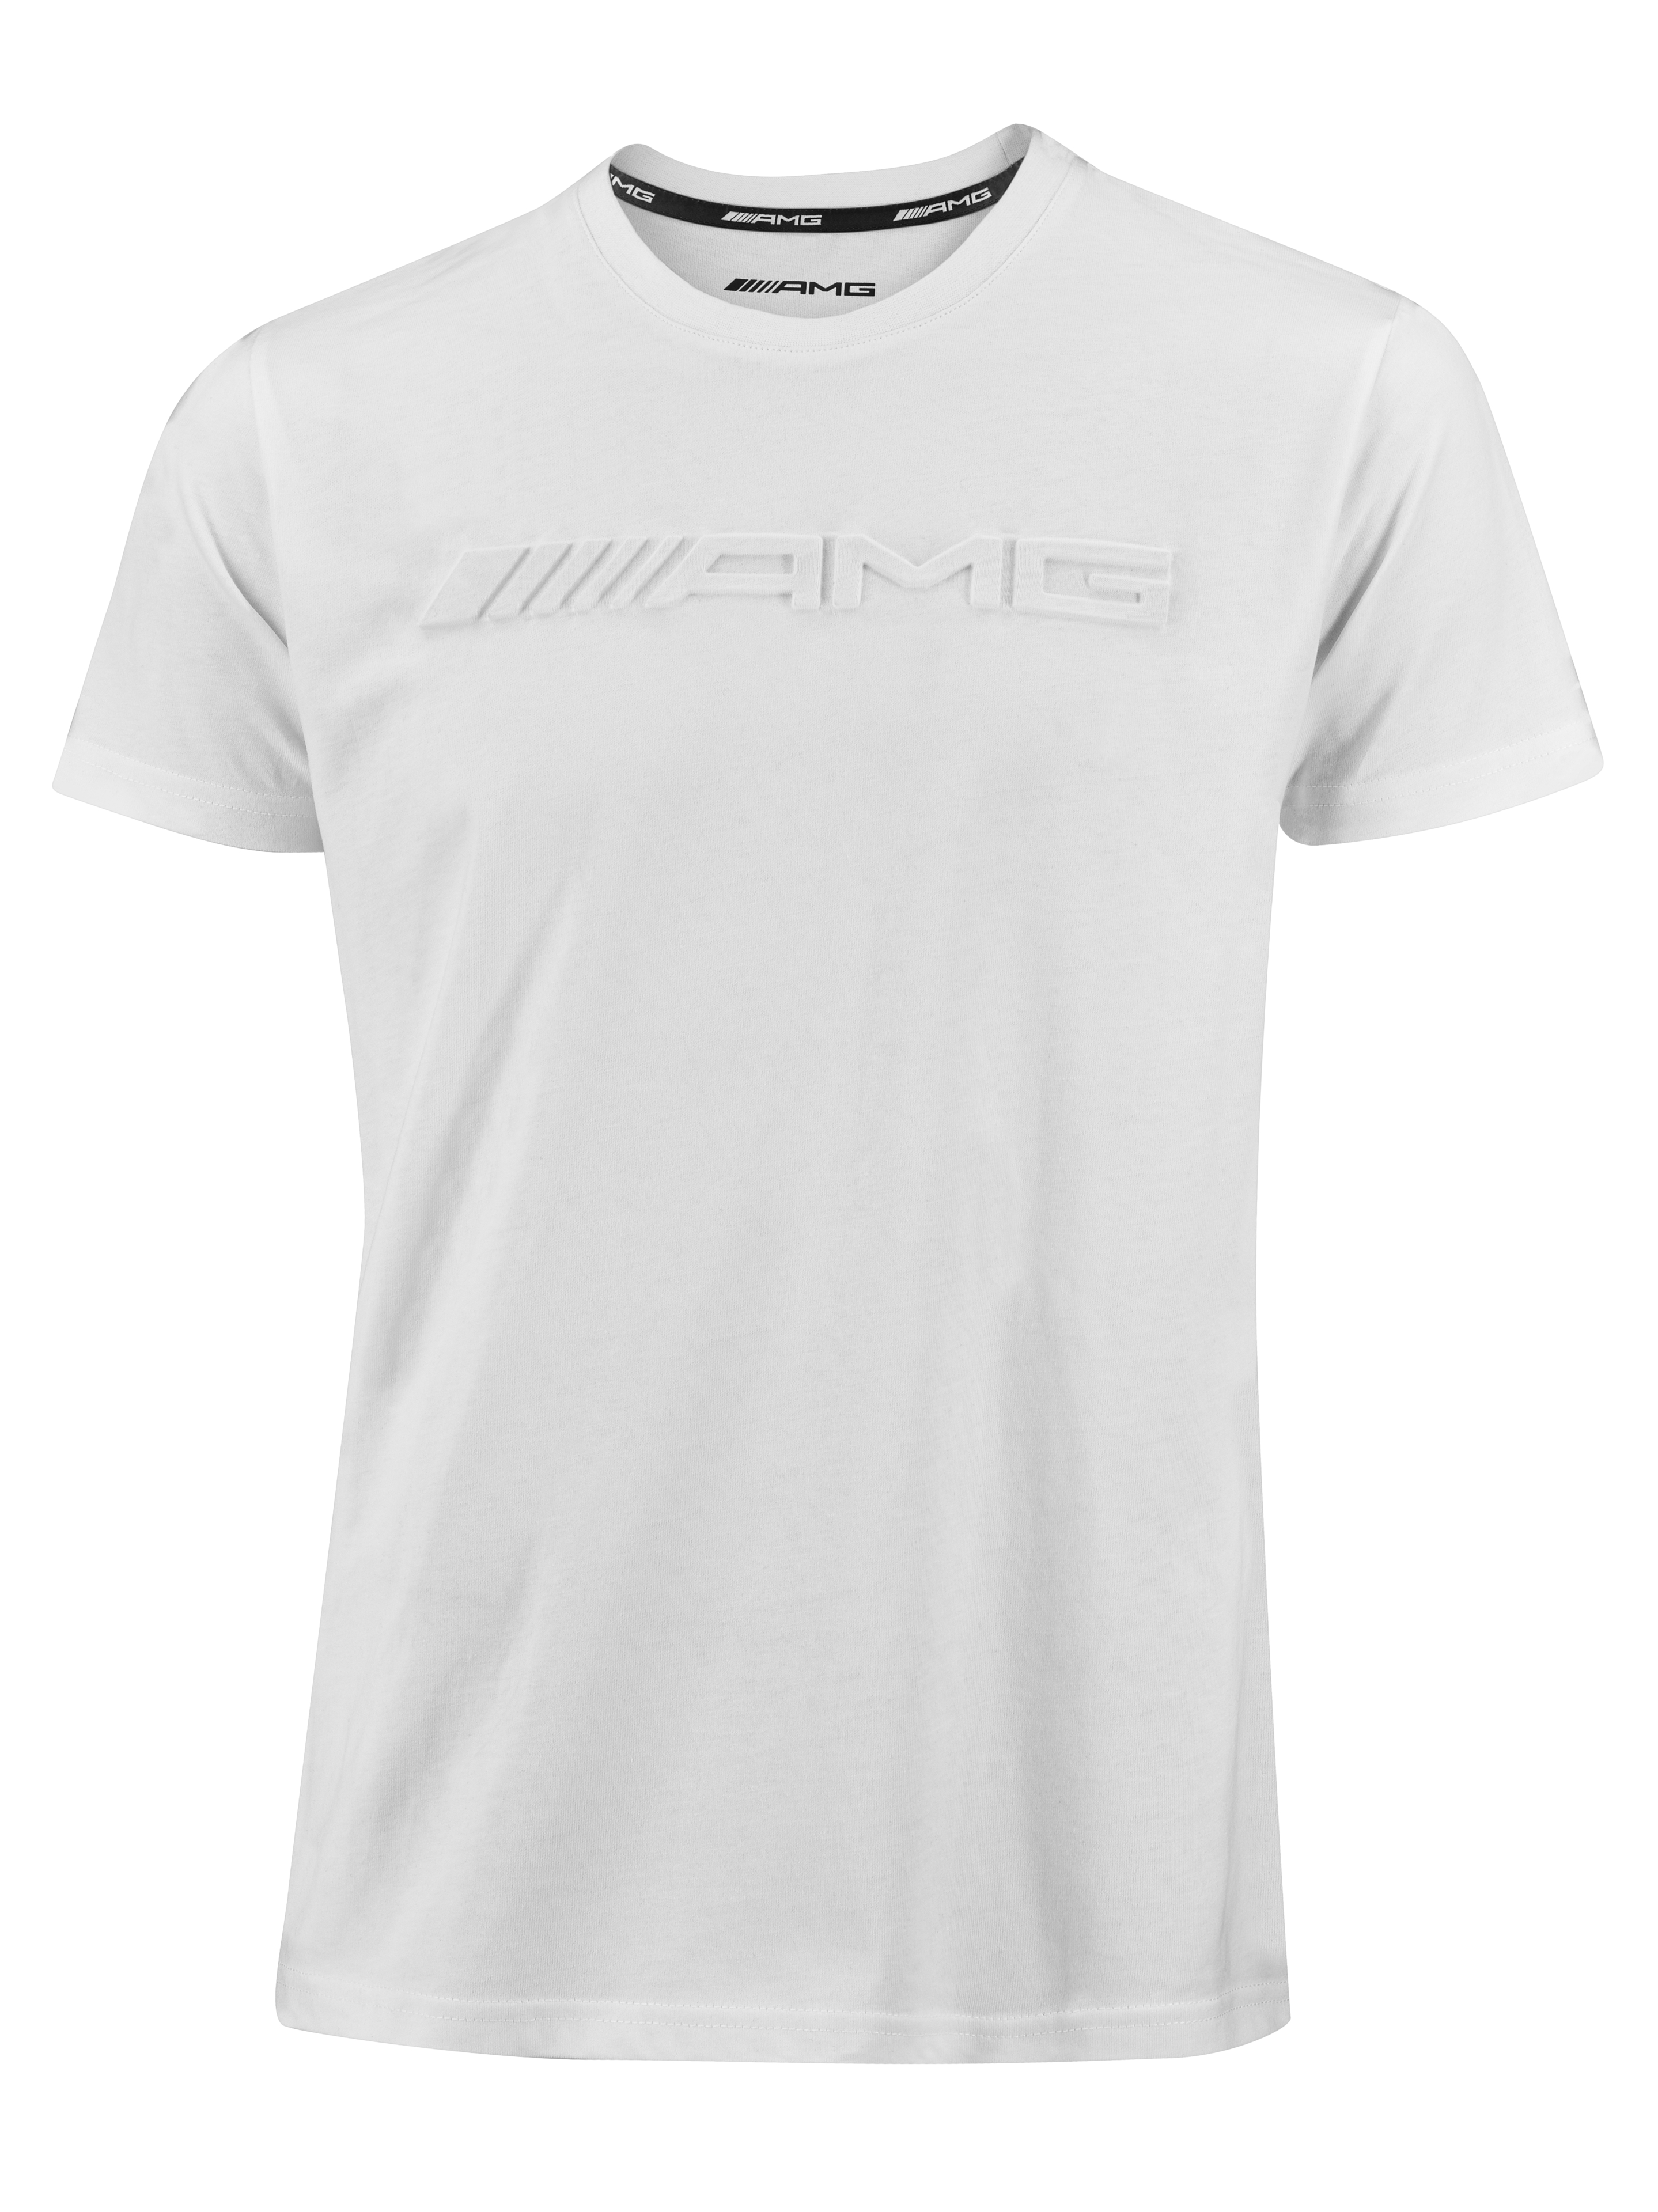 AMG T-Shirt Herren - weiß, XXL